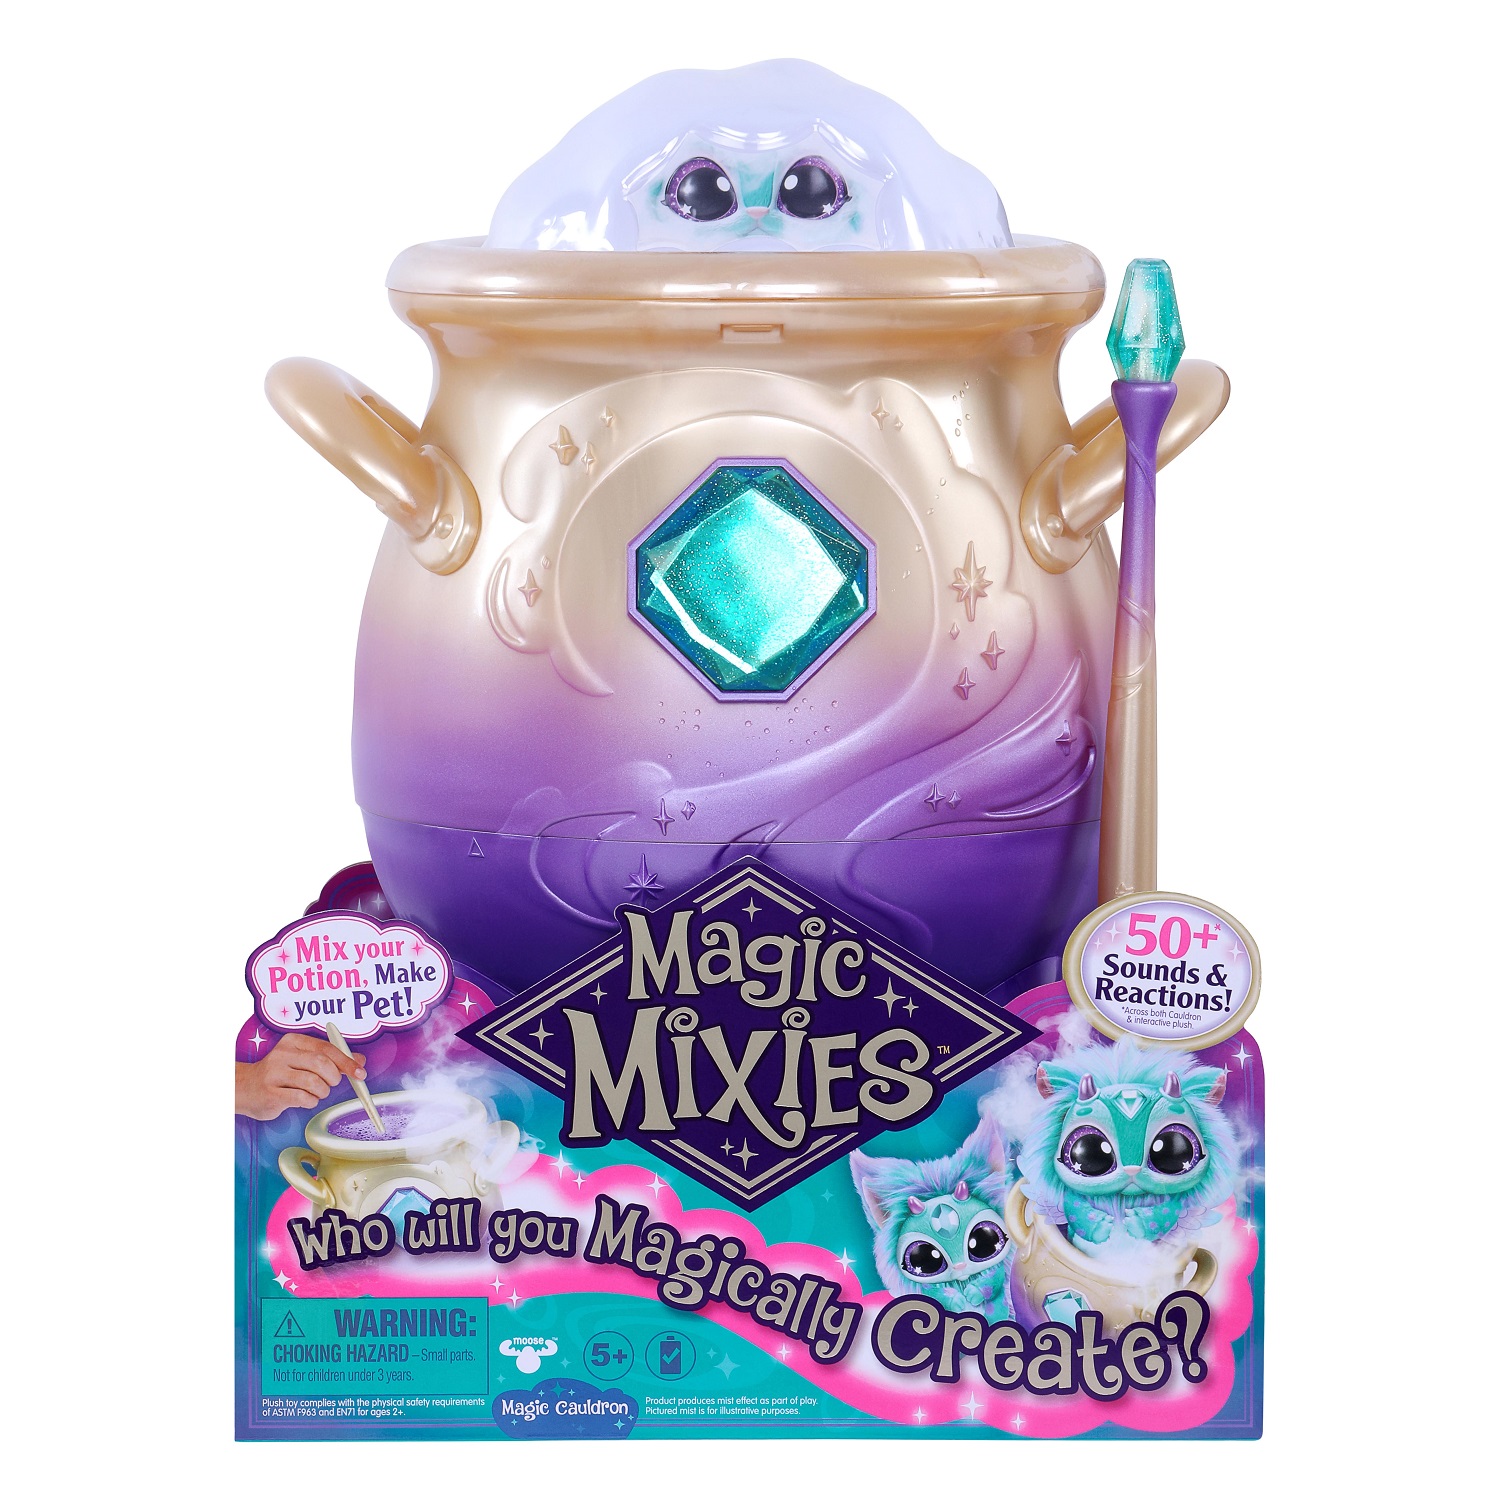 Мэджик Миксис Игровой набор интерактив Волшебный котел бирюз ТМ Magic Mixies